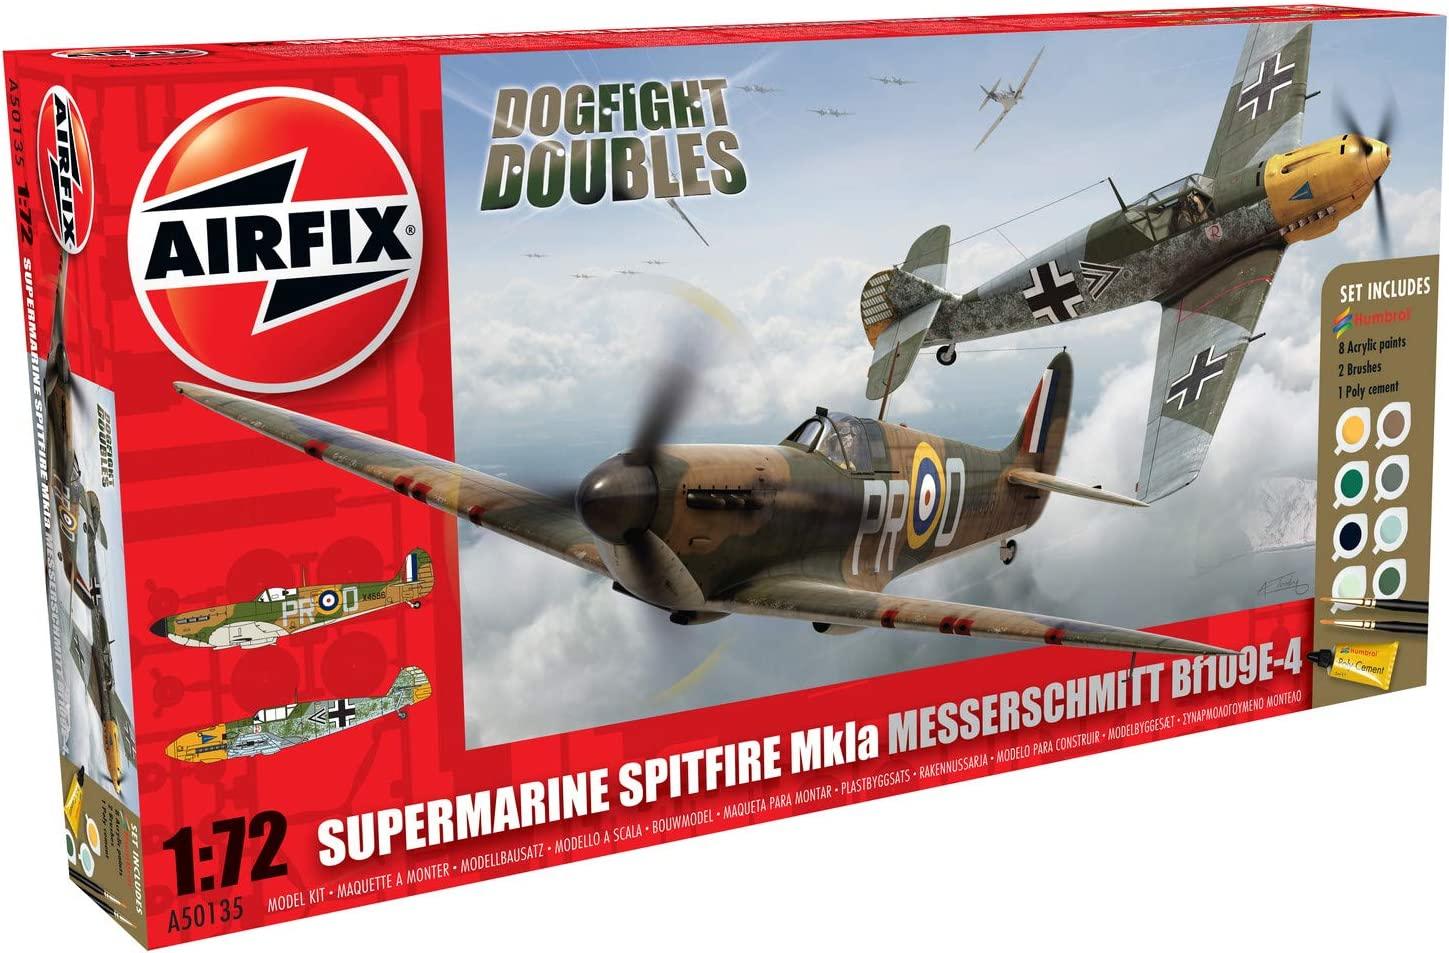 Dogfight Doubles Spitfire Mk1a And Messerschmitt Bf109e 4 Military